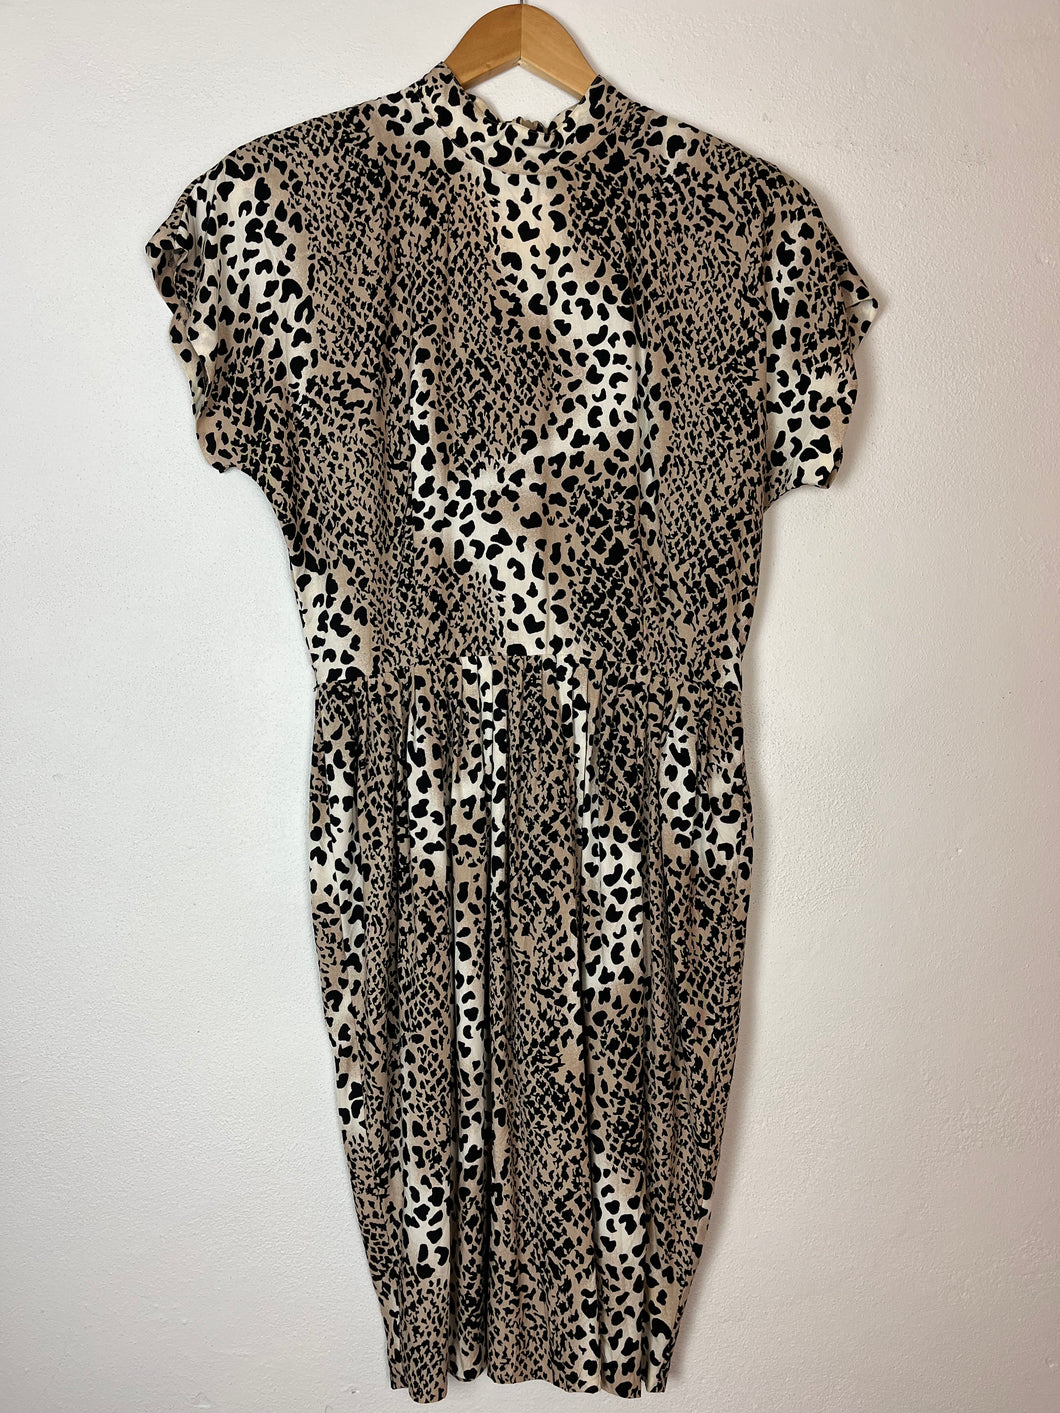 Vintage Mockneck Leopard Print Dress - Size 10